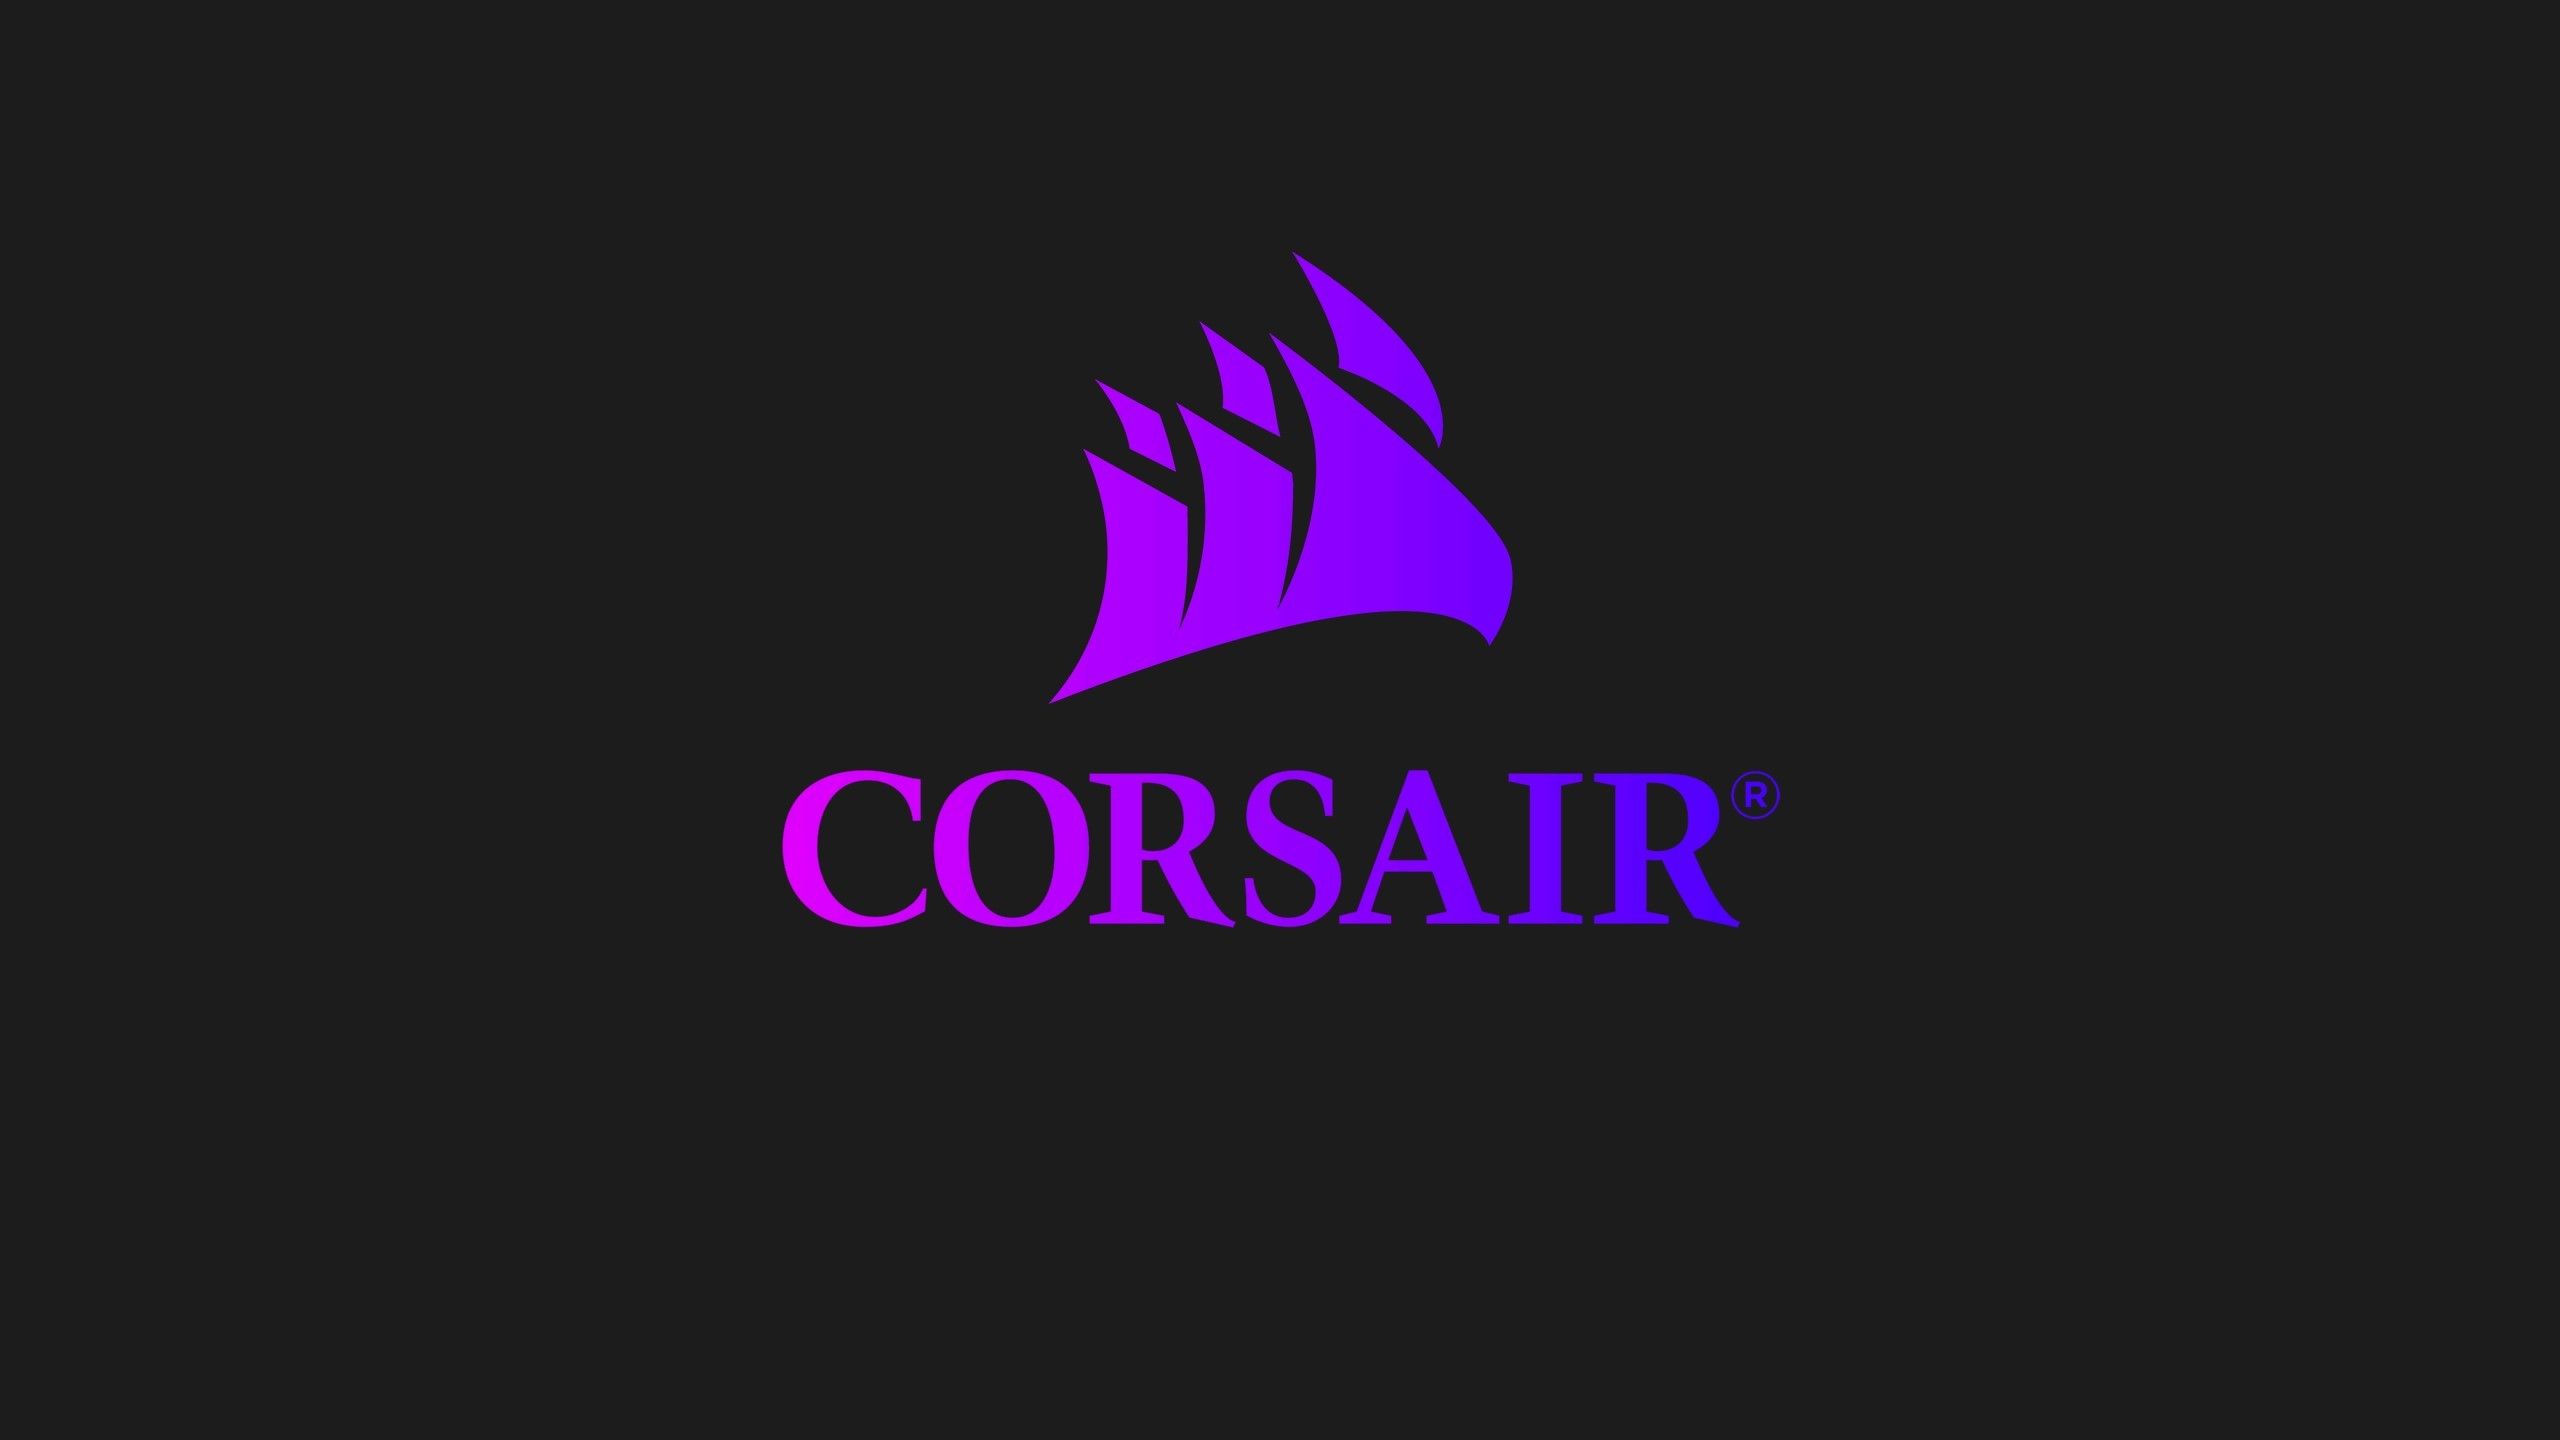 Corsair Gaming Wallpapers